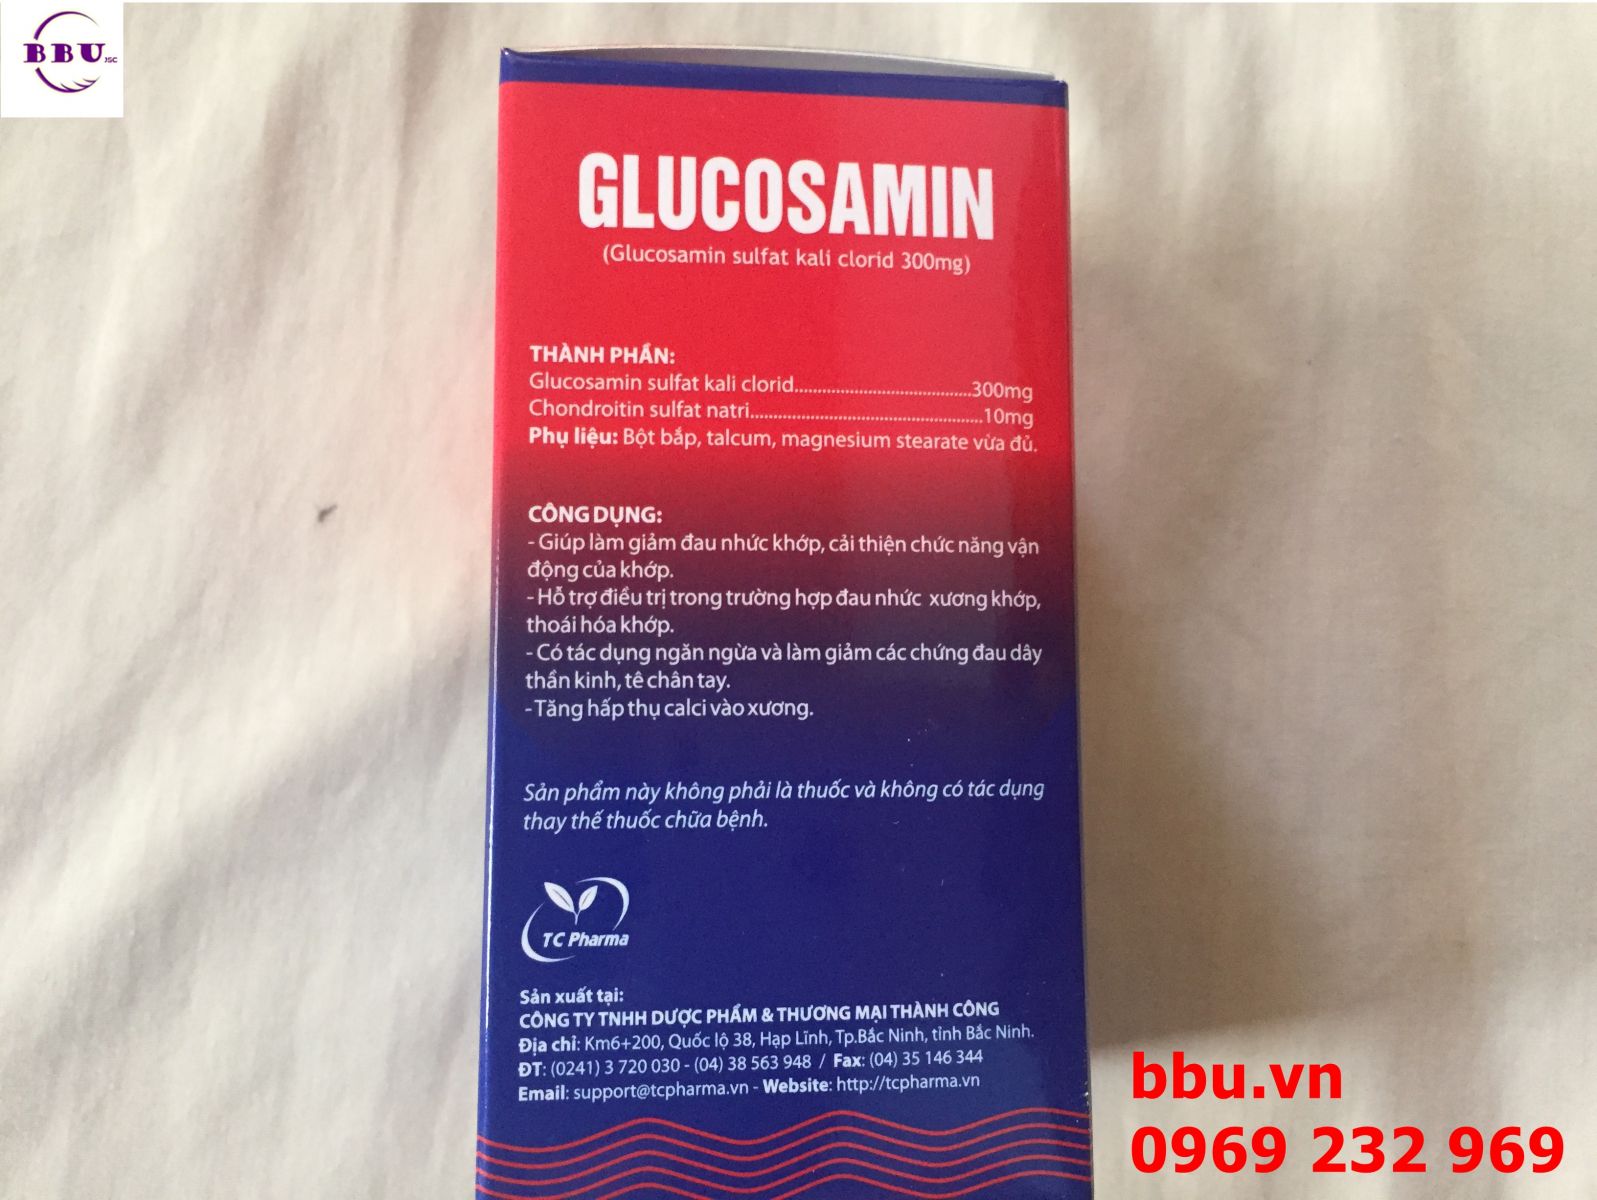 Mua sản phẩm Glucosamin điều trị đau nhức, thoái hóa khớp hiệu quả ở đâu